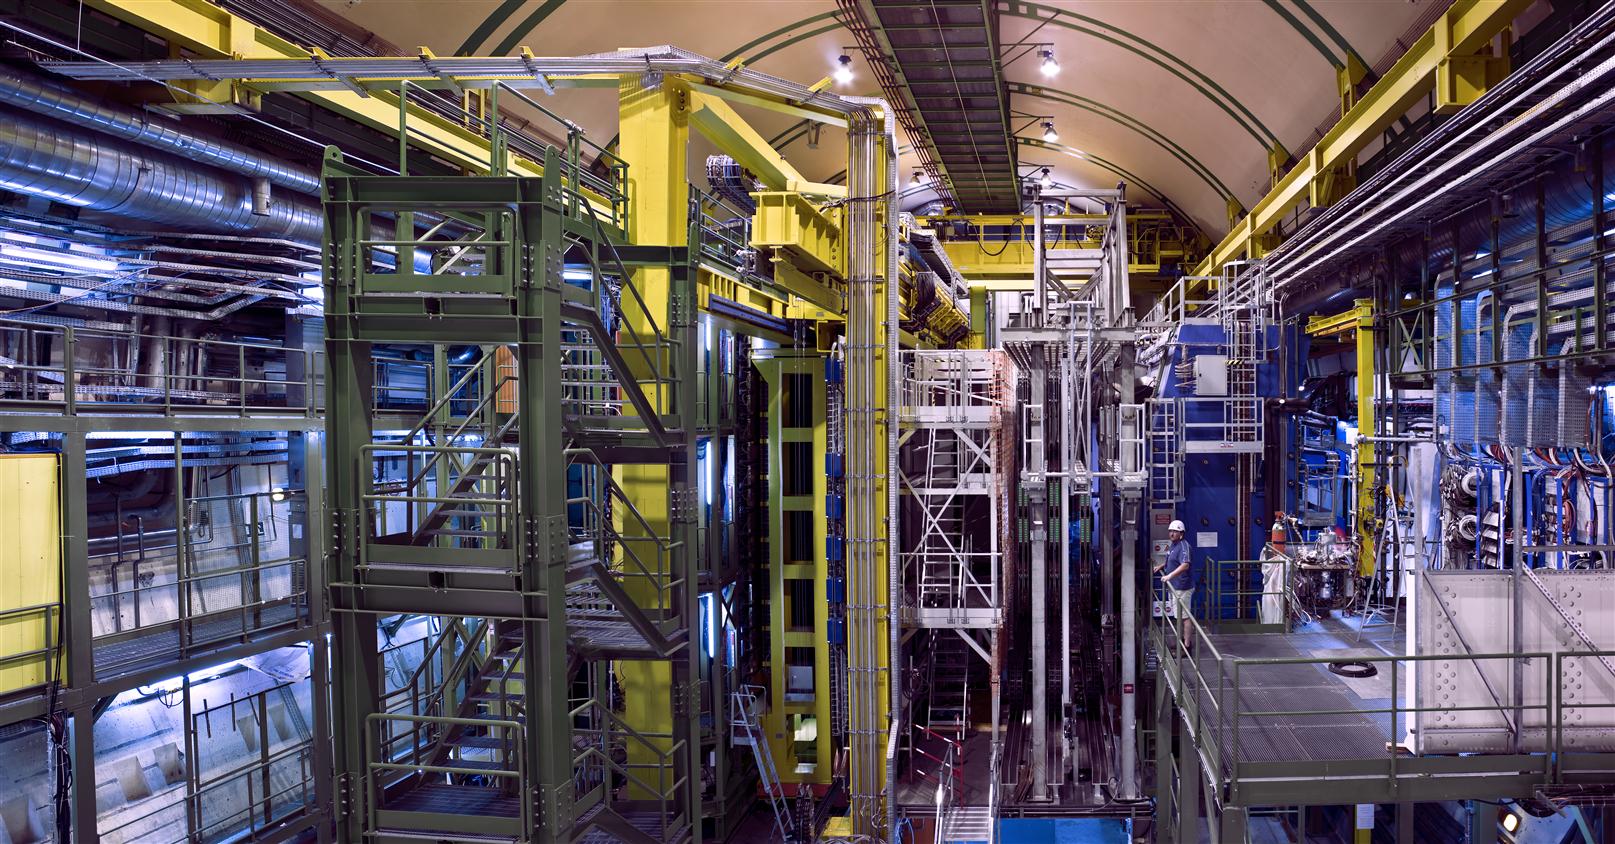 LHCb, l'un des détecteurs géants du Cern étudiant les collisions des faisceaux de protons du LHC. On y chasse les désintégrations rares de mésons contenant des quarks b. Ces mésons sont une fenêtre potentielle sur une nouvelle physique, en particulier celle pouvant expliquer pourquoi la matière domine largement l'antimatière dans le cosmos observable. © Cern